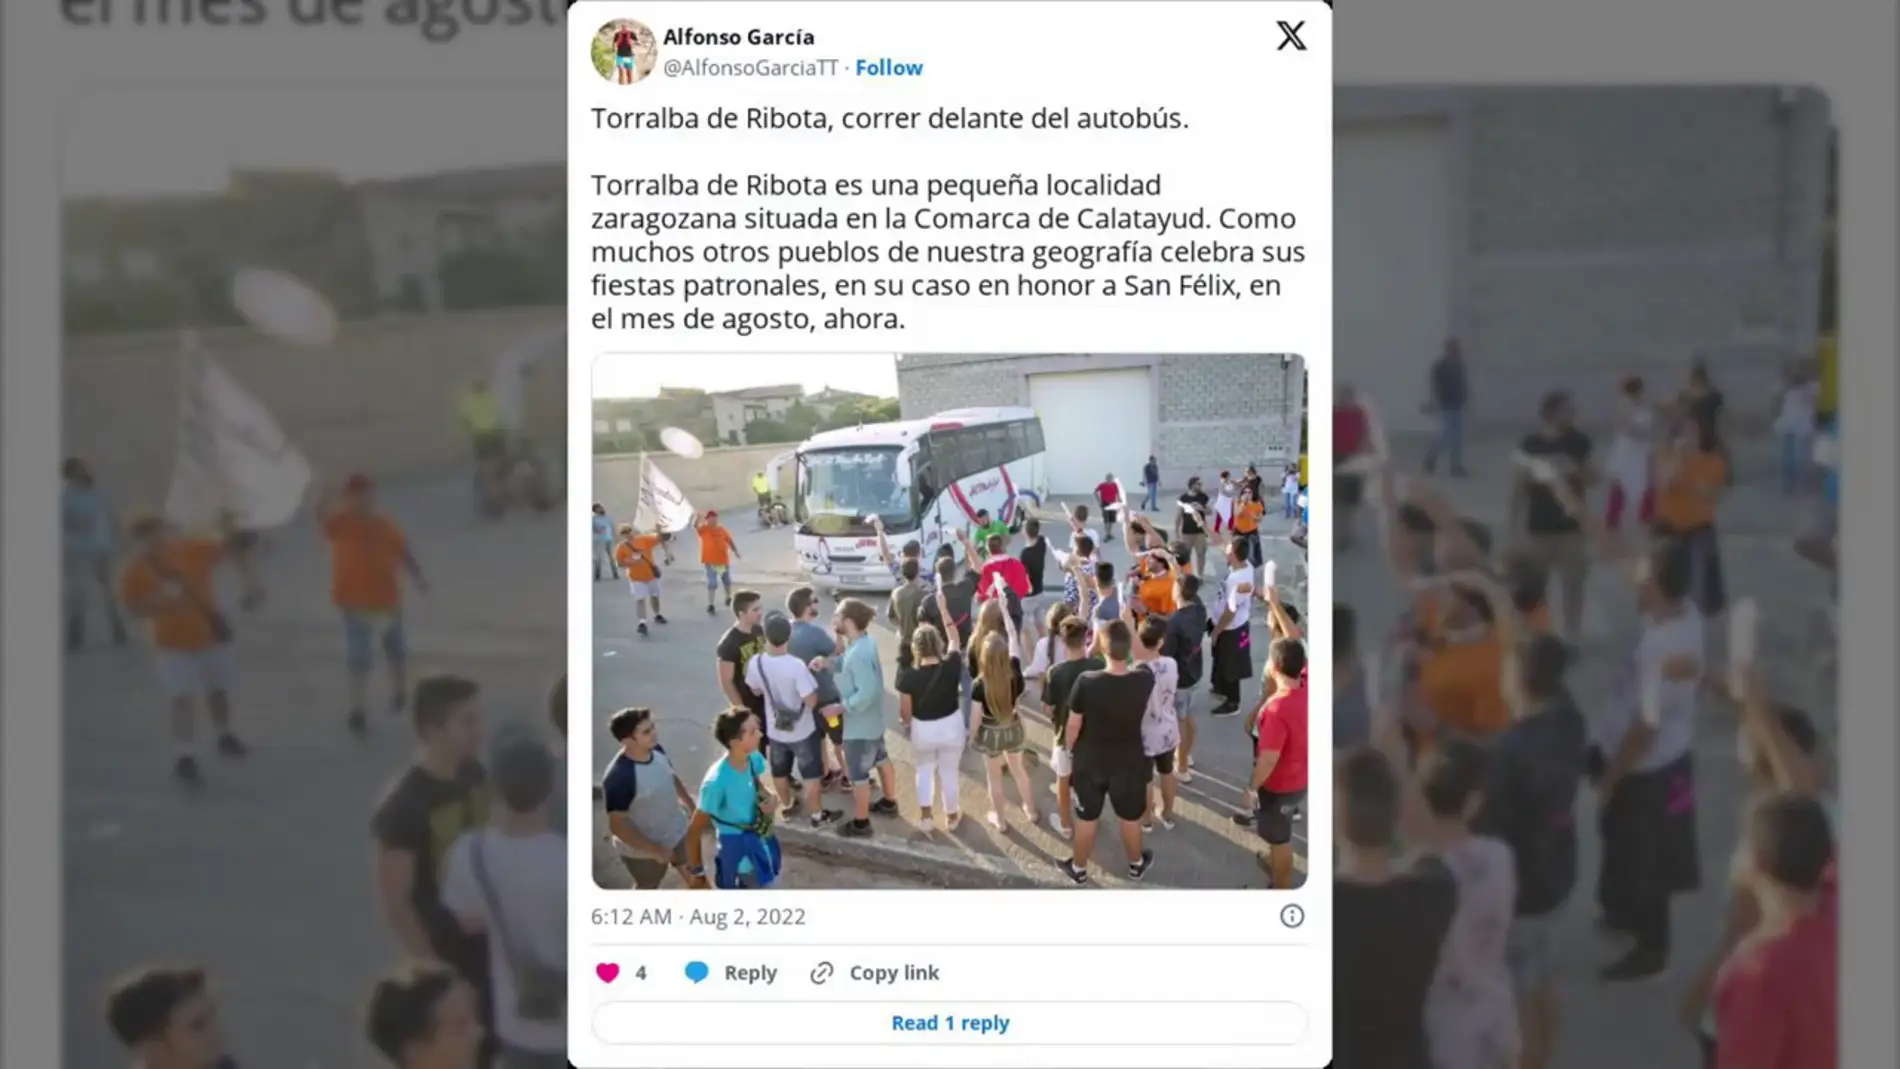 La fiesta popular de Torralba de Ribota donde las personas corren delante de un autobús como si fuera un encierro